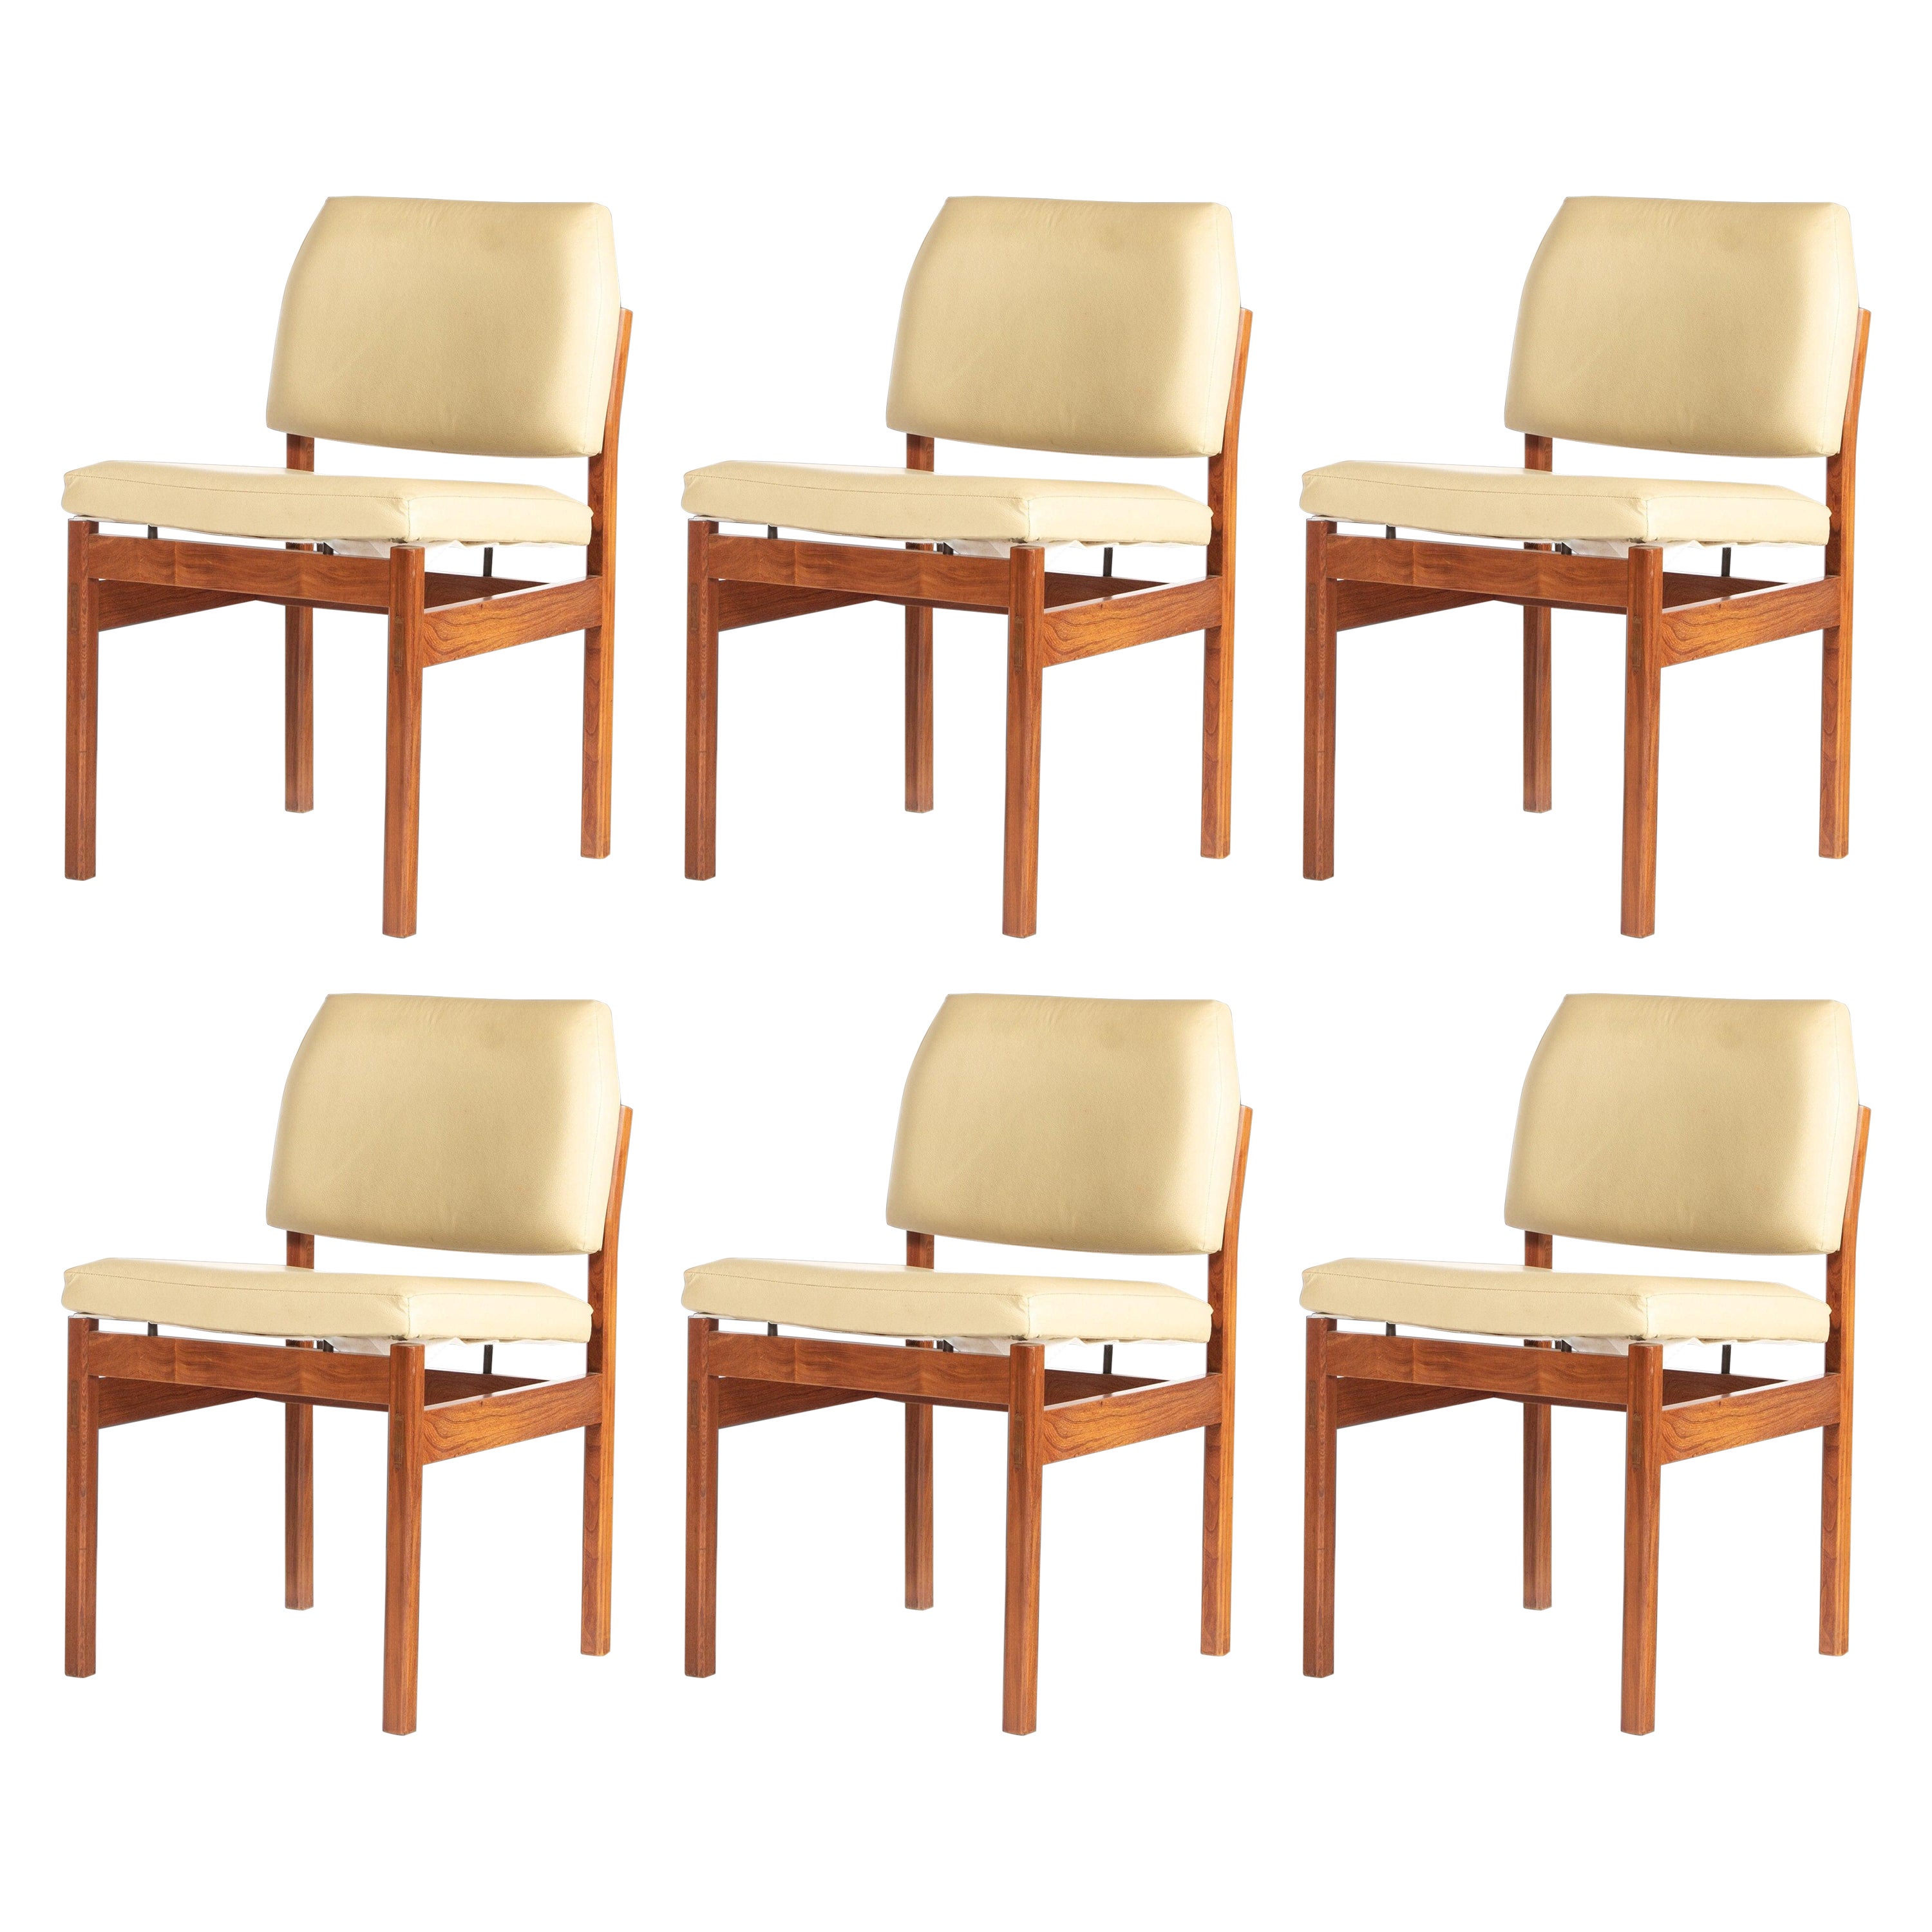 Satz von sechs (6) Esszimmerstühlen aus Nussbaumholz in der Art von Jens Risom, USA, ca. 1960er Jahre